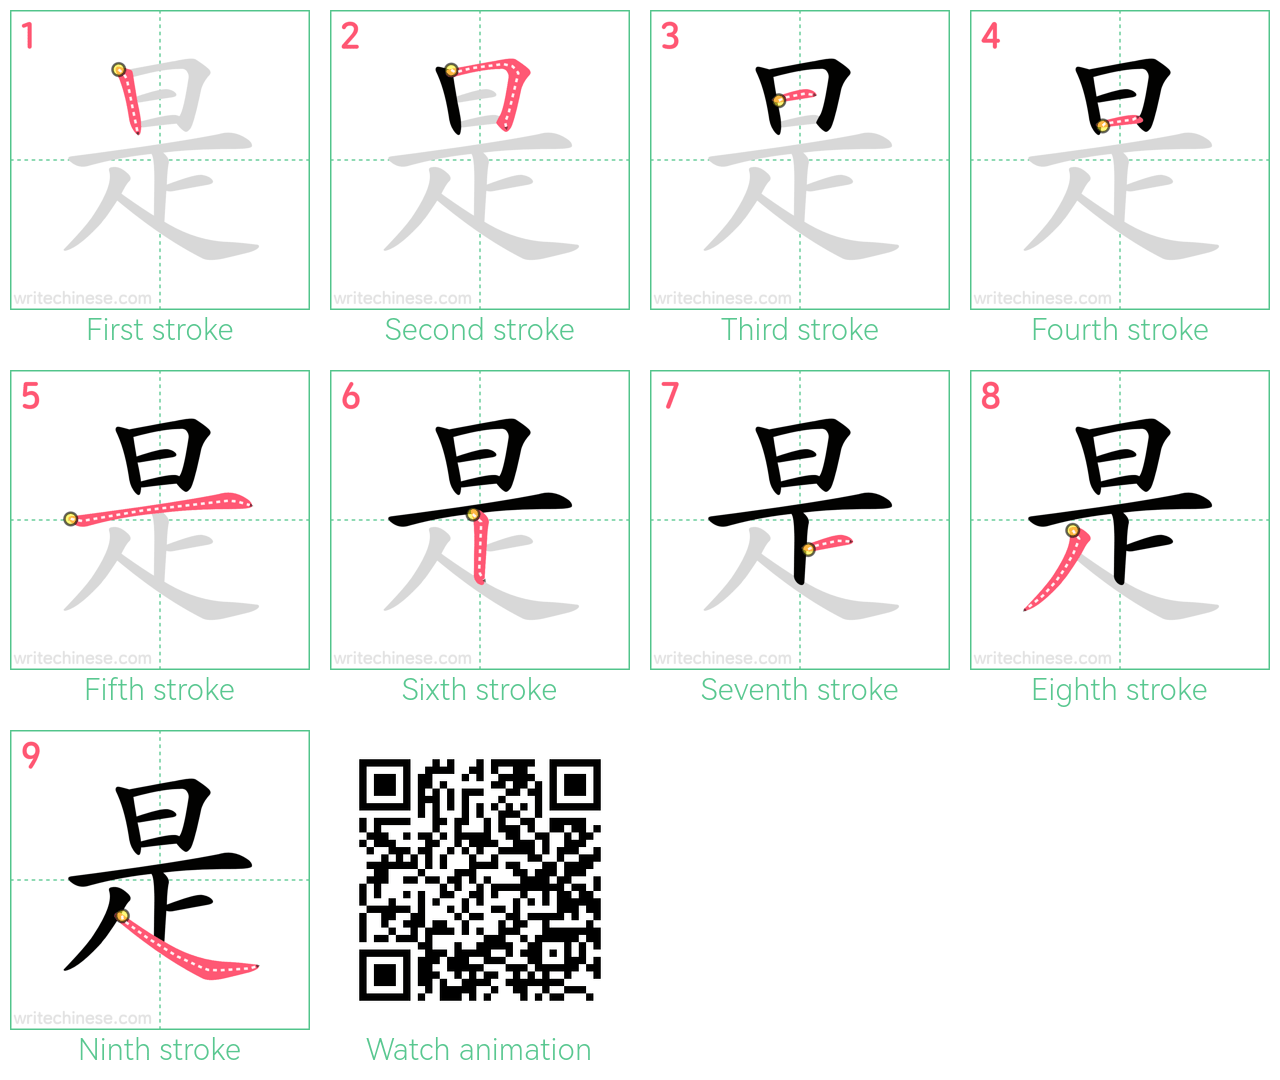 是 step-by-step stroke order diagrams